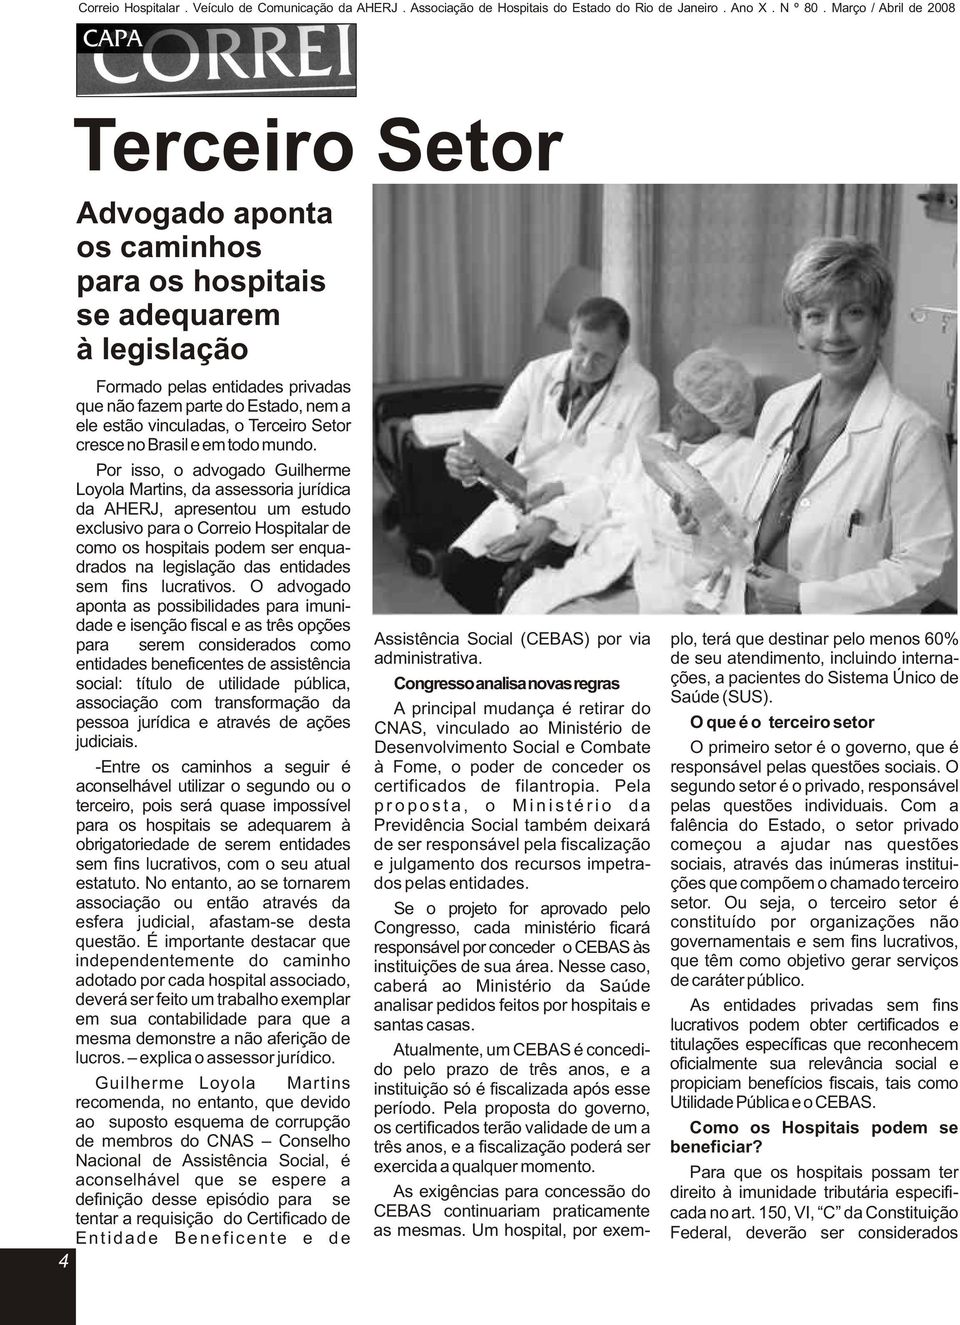 Por isso, o advogado Guilherme Loyola Martins, da assessoria jurídica da AHERJ, apresentou um estudo exclusivo para o Correio Hospitalar de como os hospitais podem ser enquadrados na legislação das